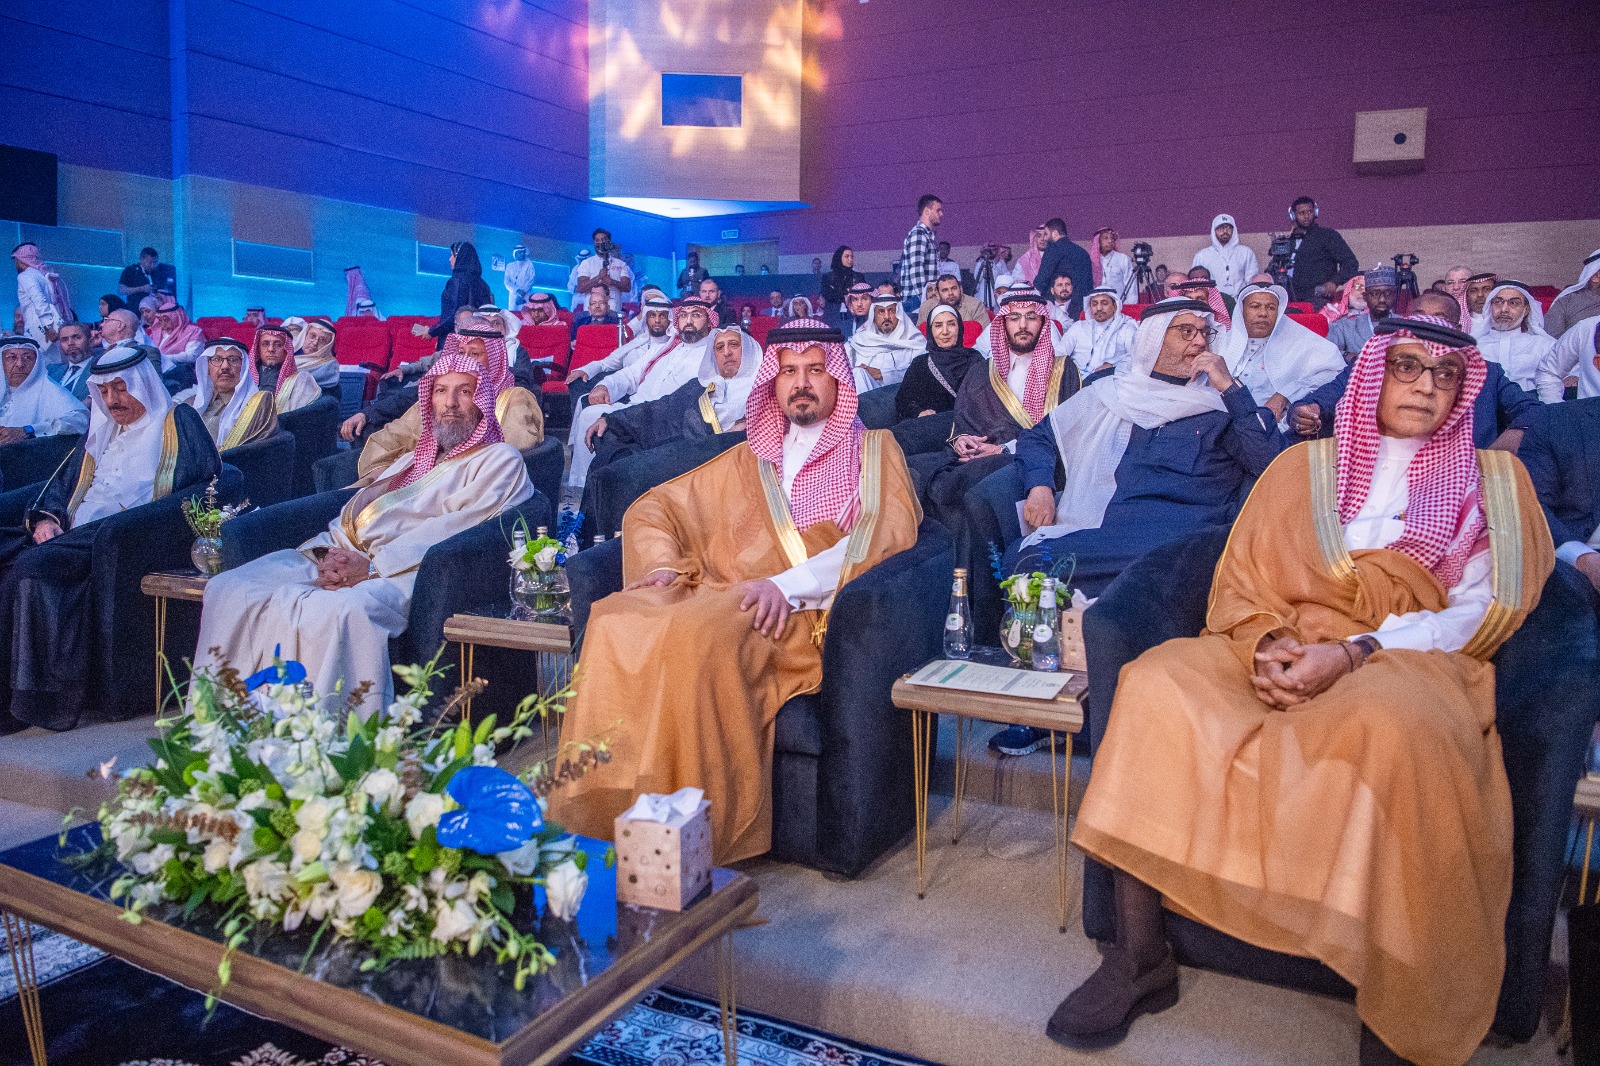 Le Forum Al-Baraka pour l’économie islamique a tenu sa 44ème session à l’Université Prince Muqrin bin Abdulaziz de Médine en Arabie Saoudite